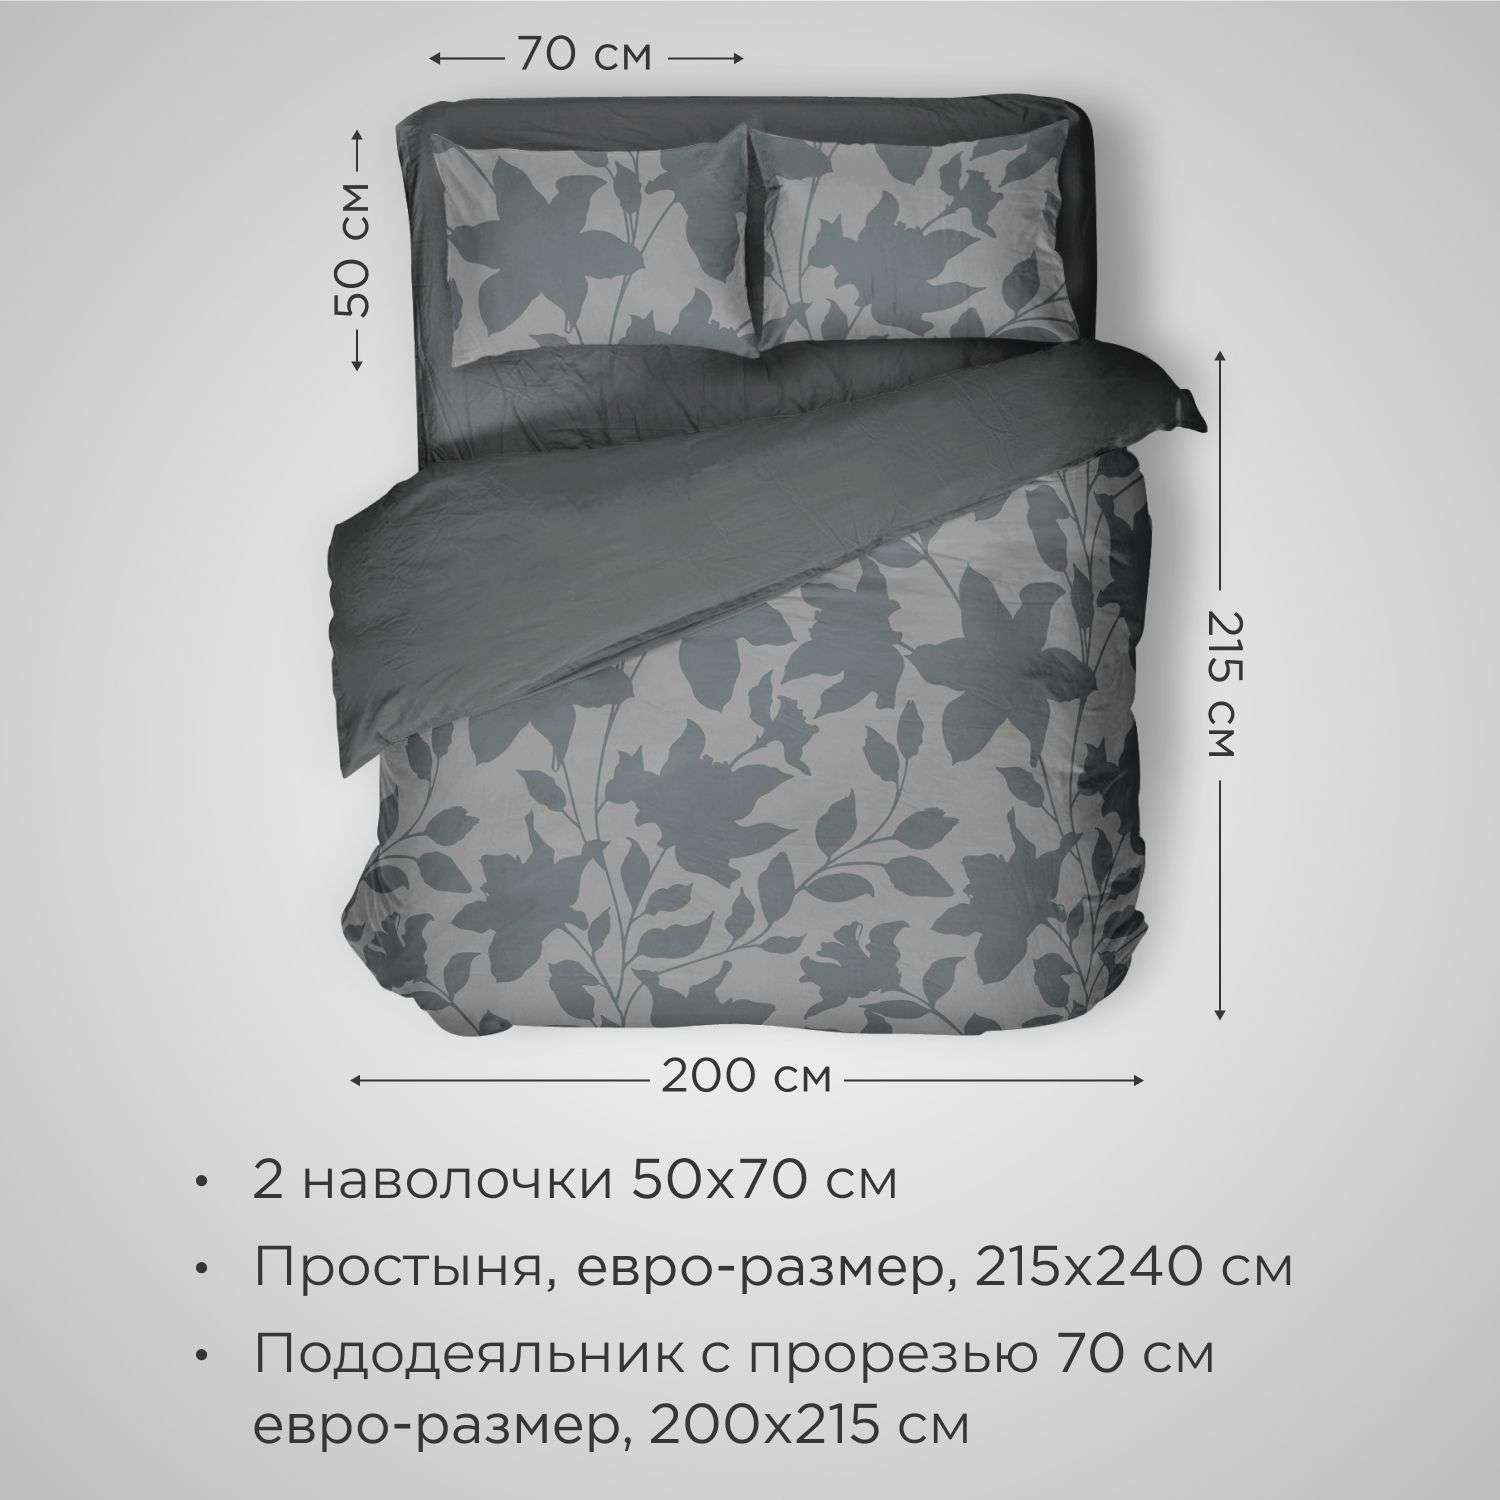 Комплект постельного белья SONNO URBAN FLOWERS евро-размер цвет Цветы матовый графит - фото 2